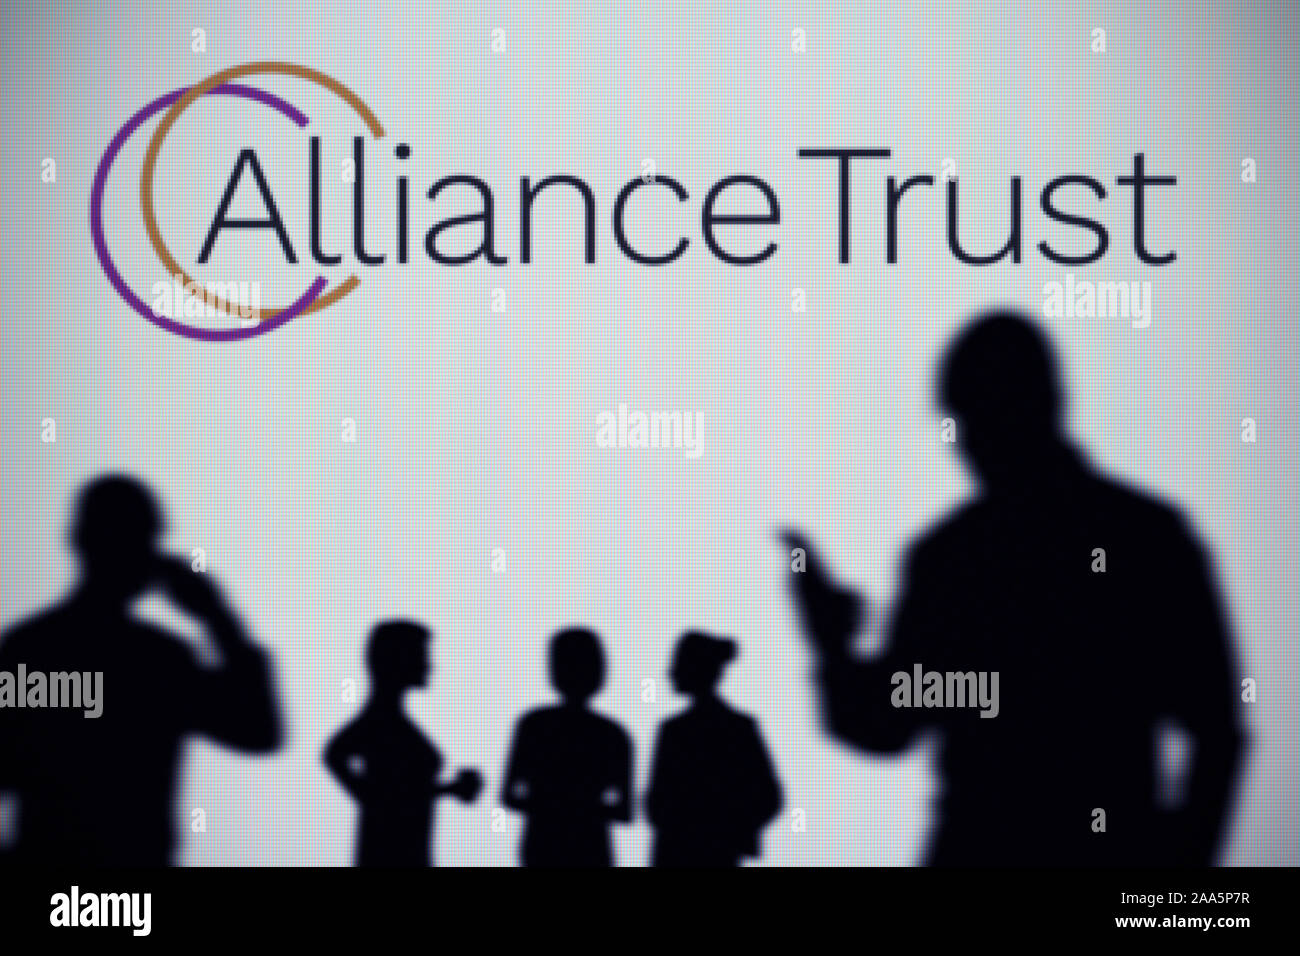 La Alianza logotipo de confianza se ve en una pantalla LED en el fondo mientras una silueta persona utiliza un smartphone (uso Editorial solamente) Foto de stock